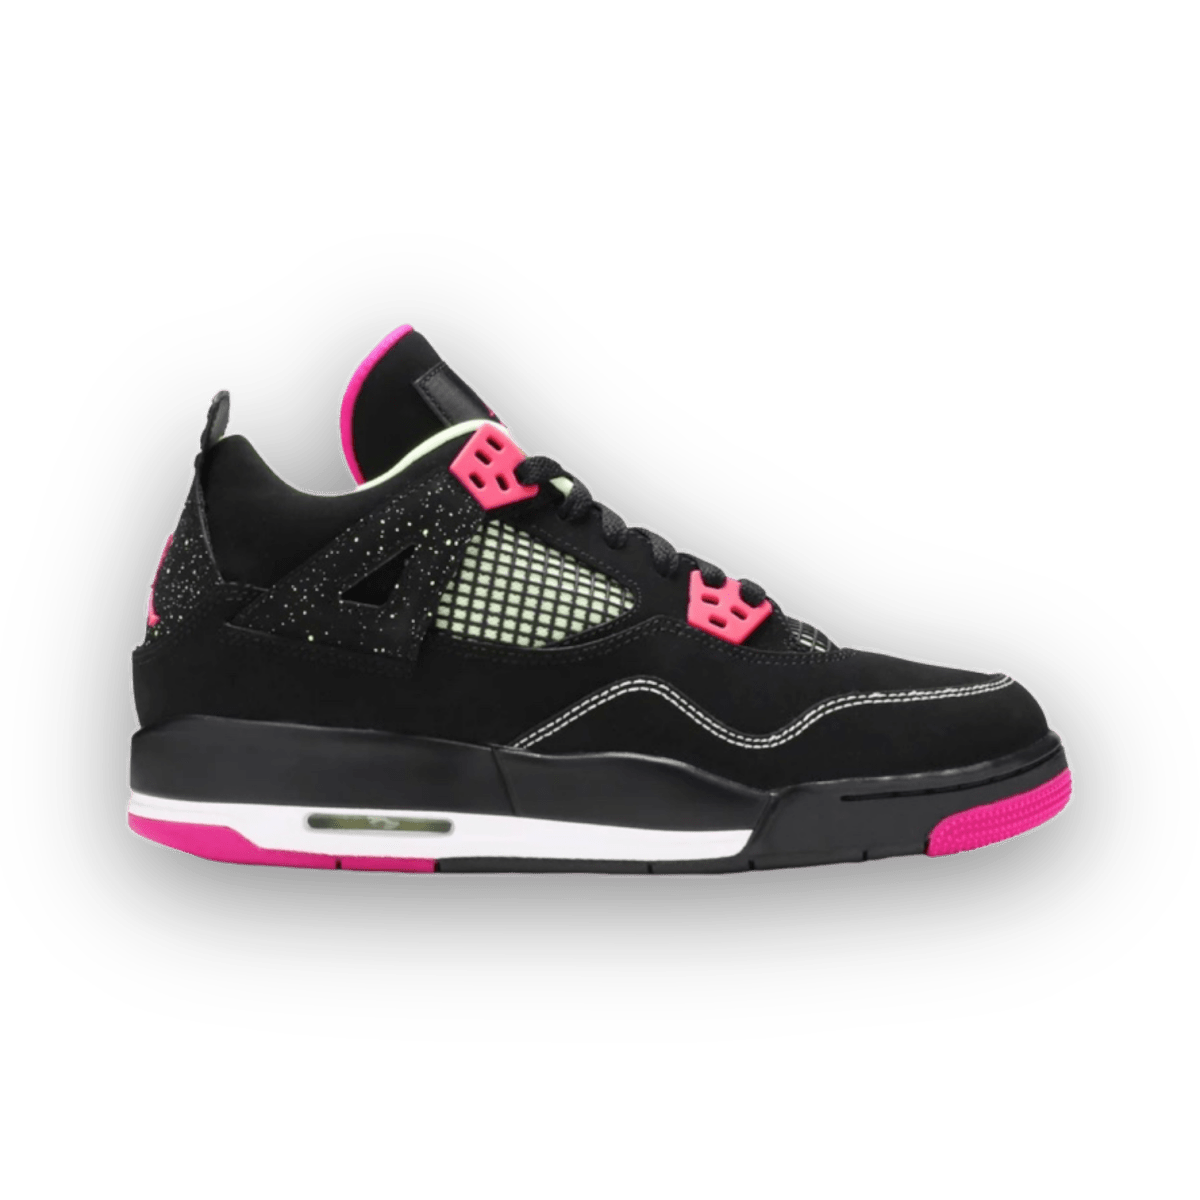 Air Jordan 4 Retro 'Fuchsia' - Grade School - Mid Sneaker - Jawns on Fire Sneakers & Streetwear